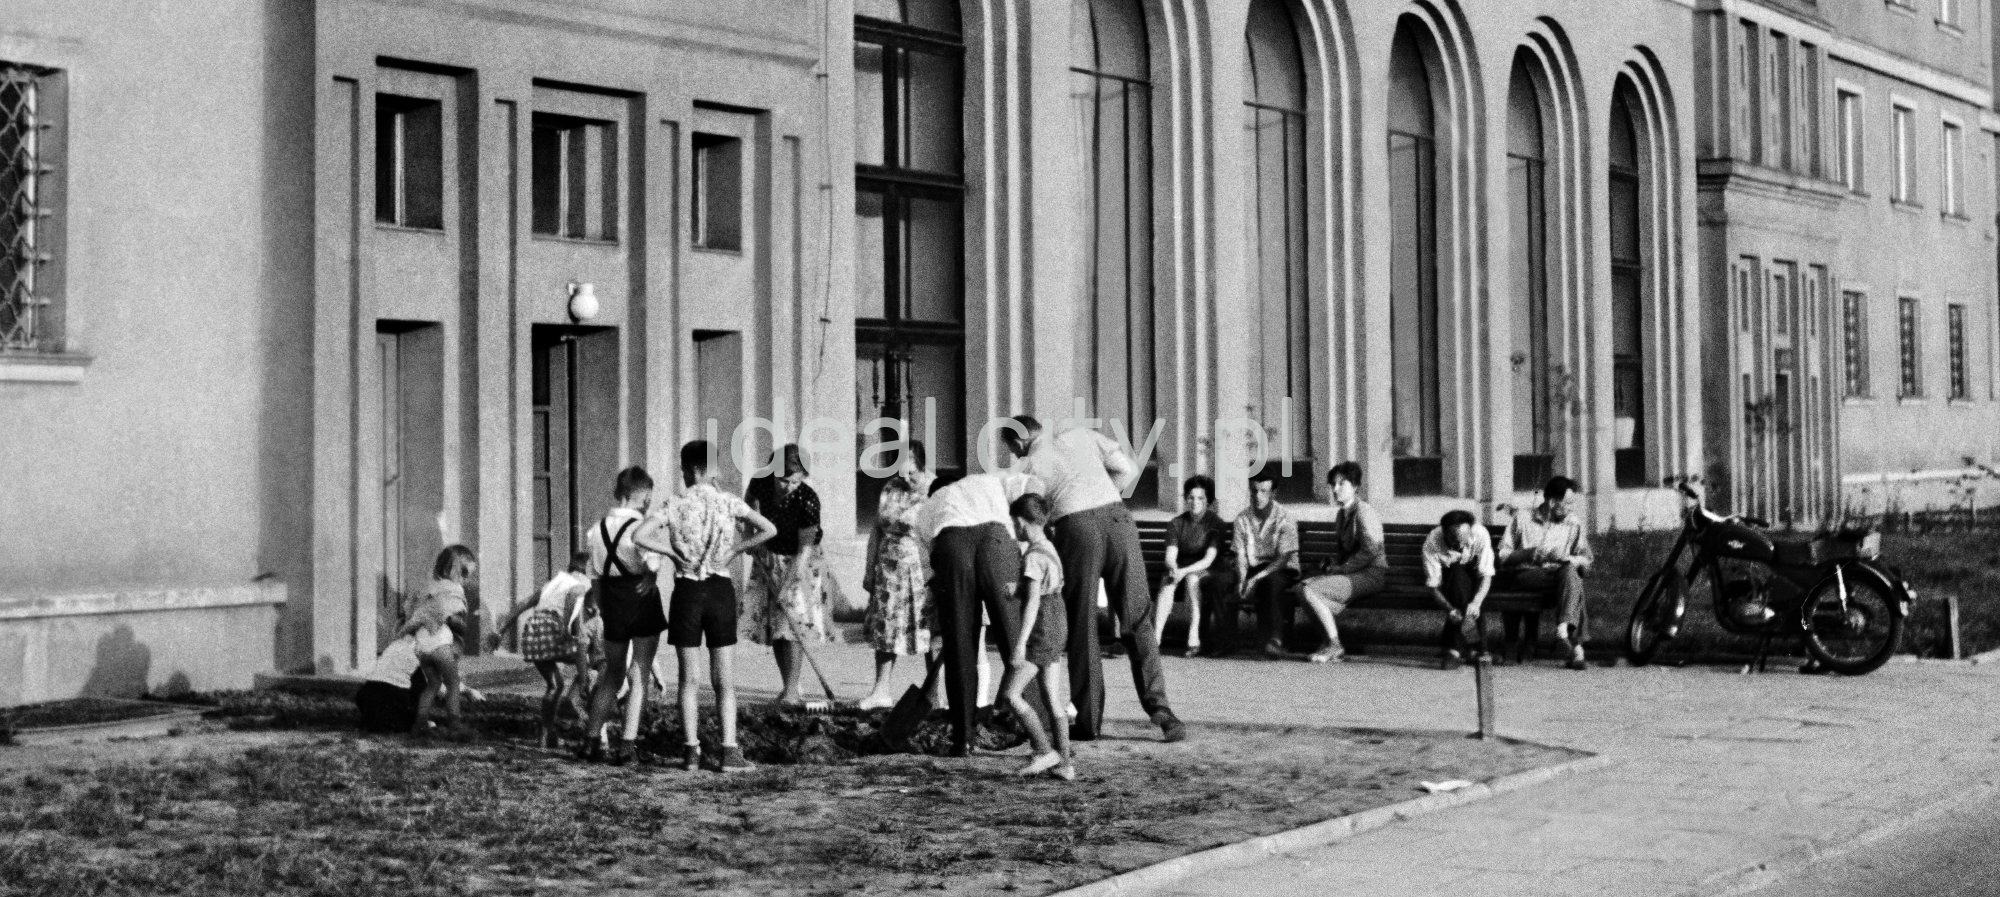 Grupa mieszkańców w trakcie prac społecznych na trawniku przed budynkiem mieszkalnym.